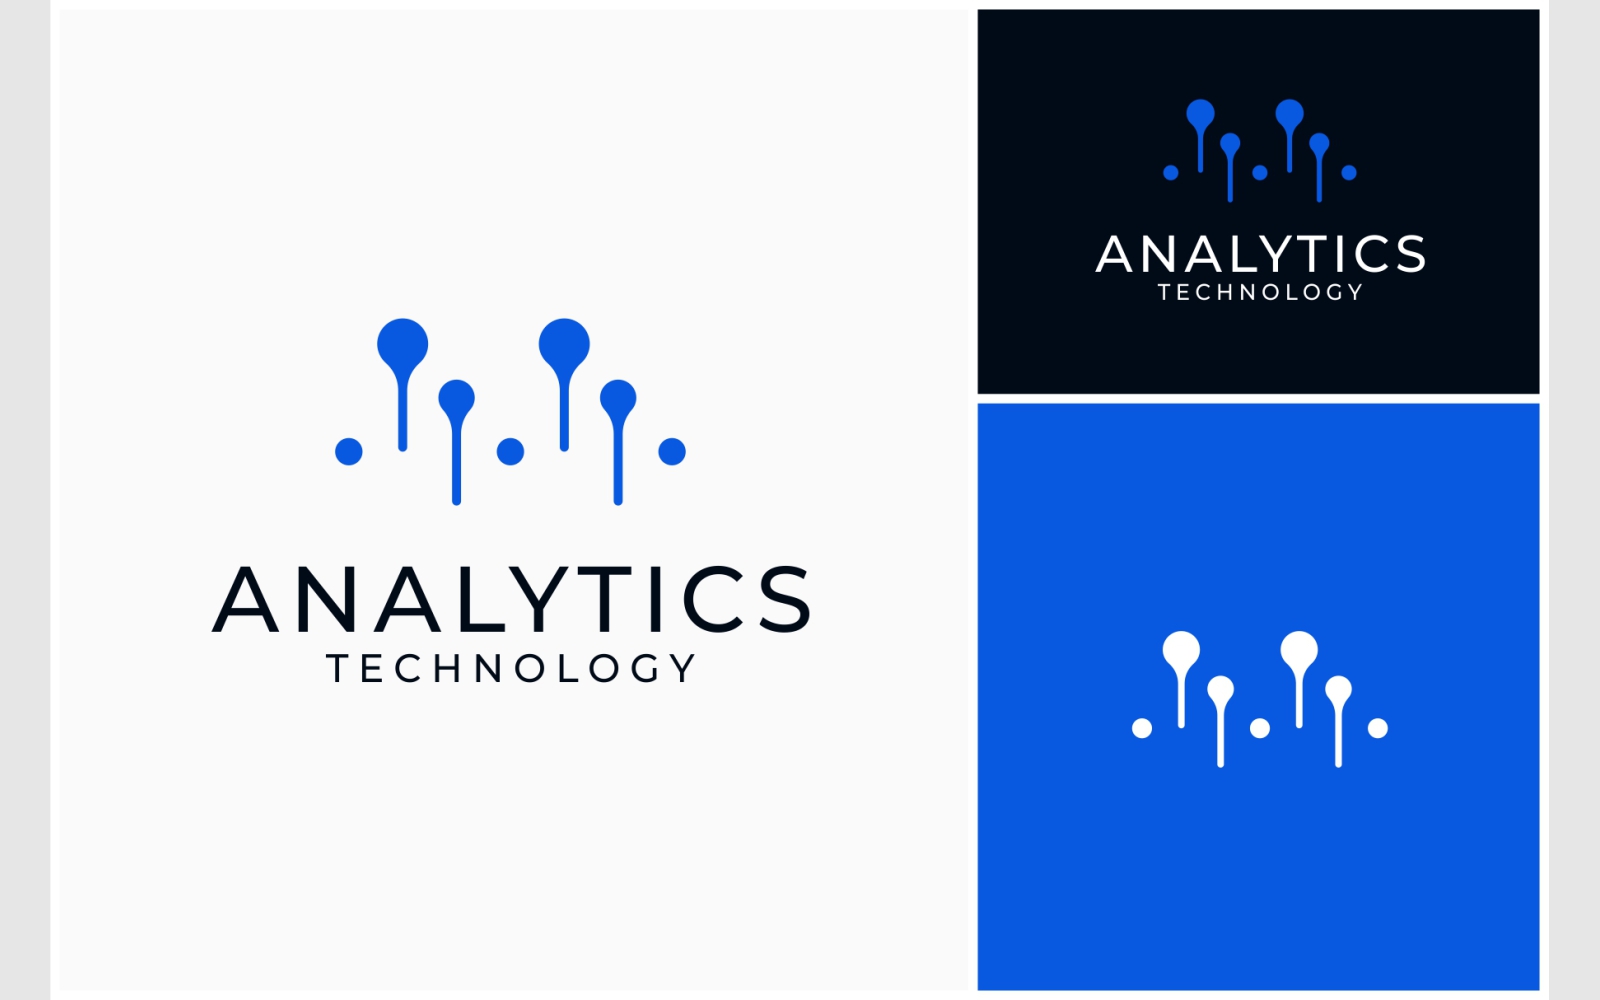 Analytics Technology Digital Logo